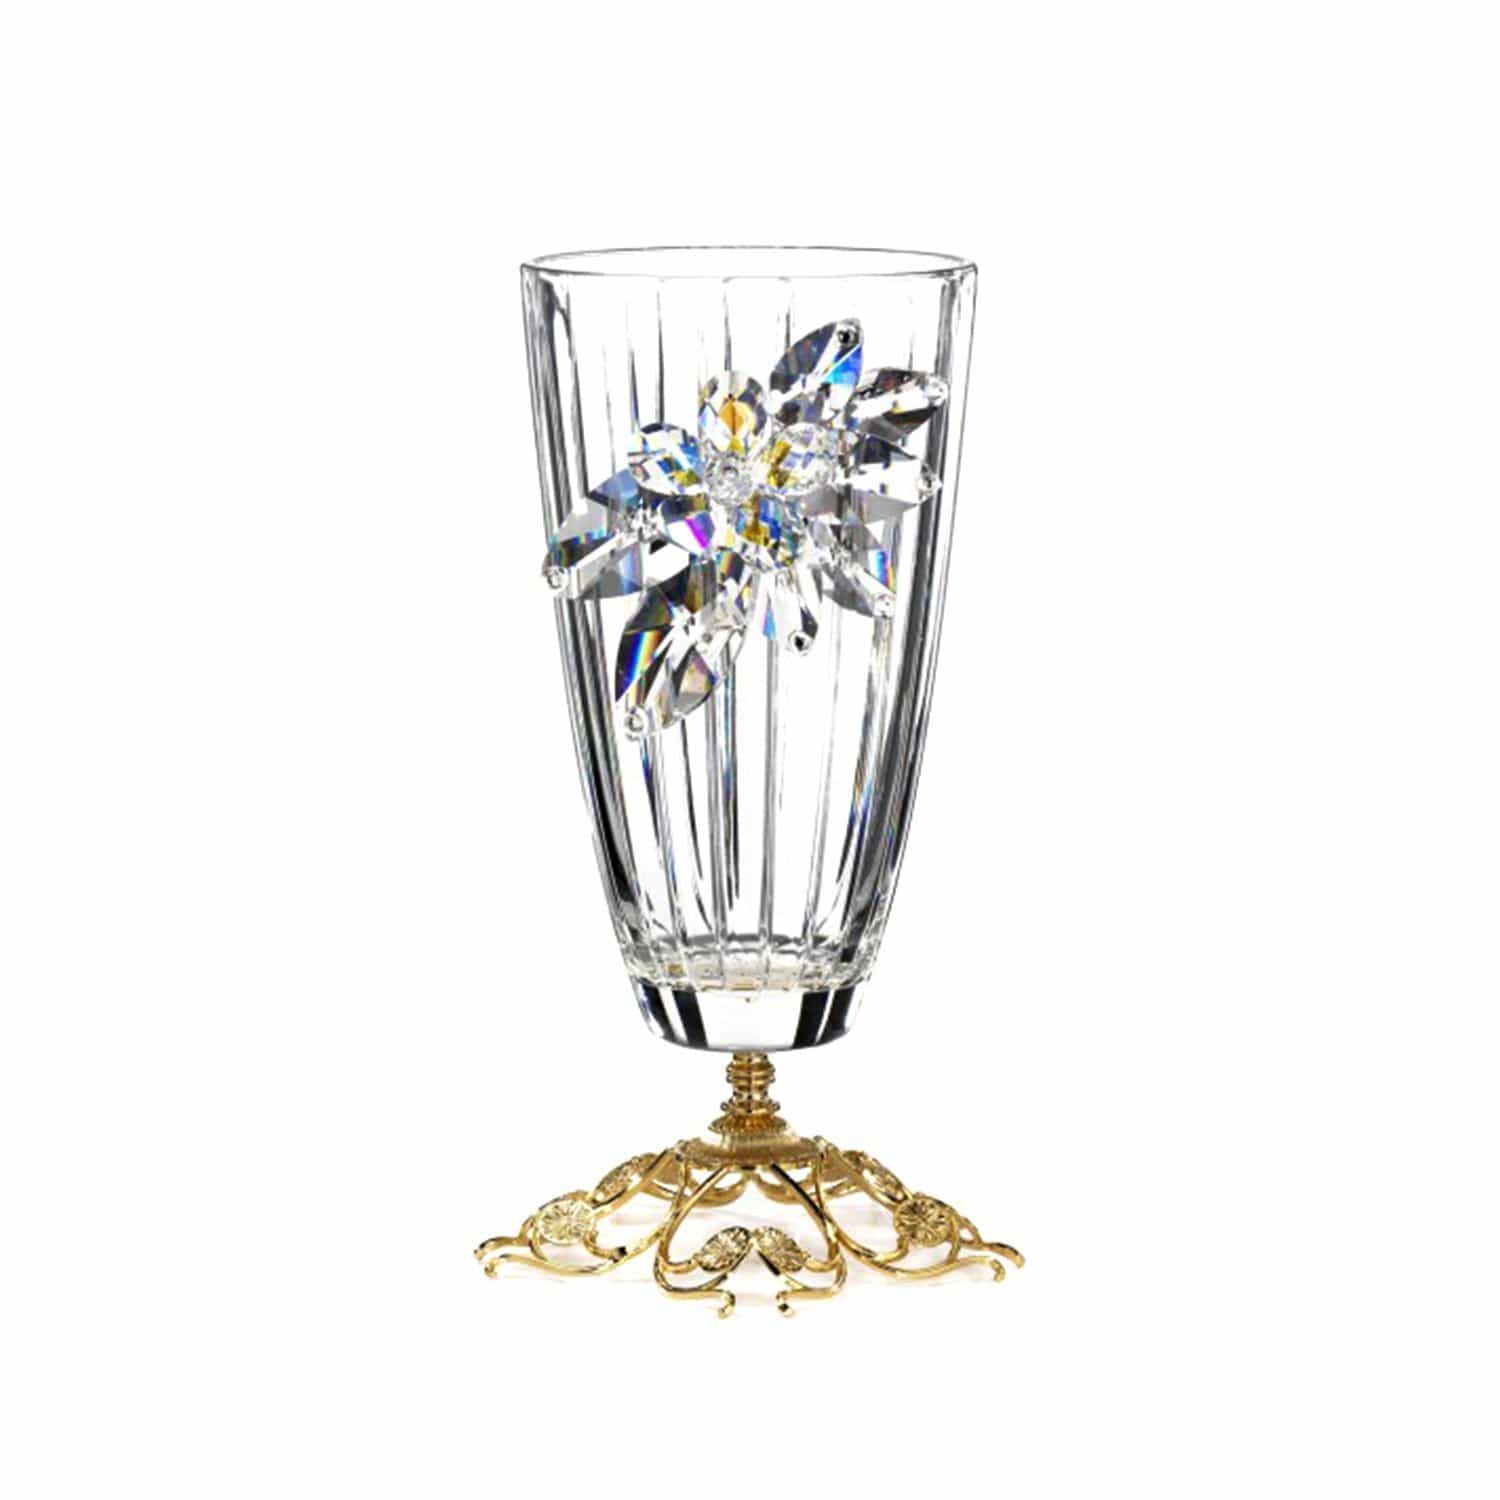 Debora Carlucci Crystal Flowers Glass Vase with Metal Base - DC5546 - Jashanmal Home